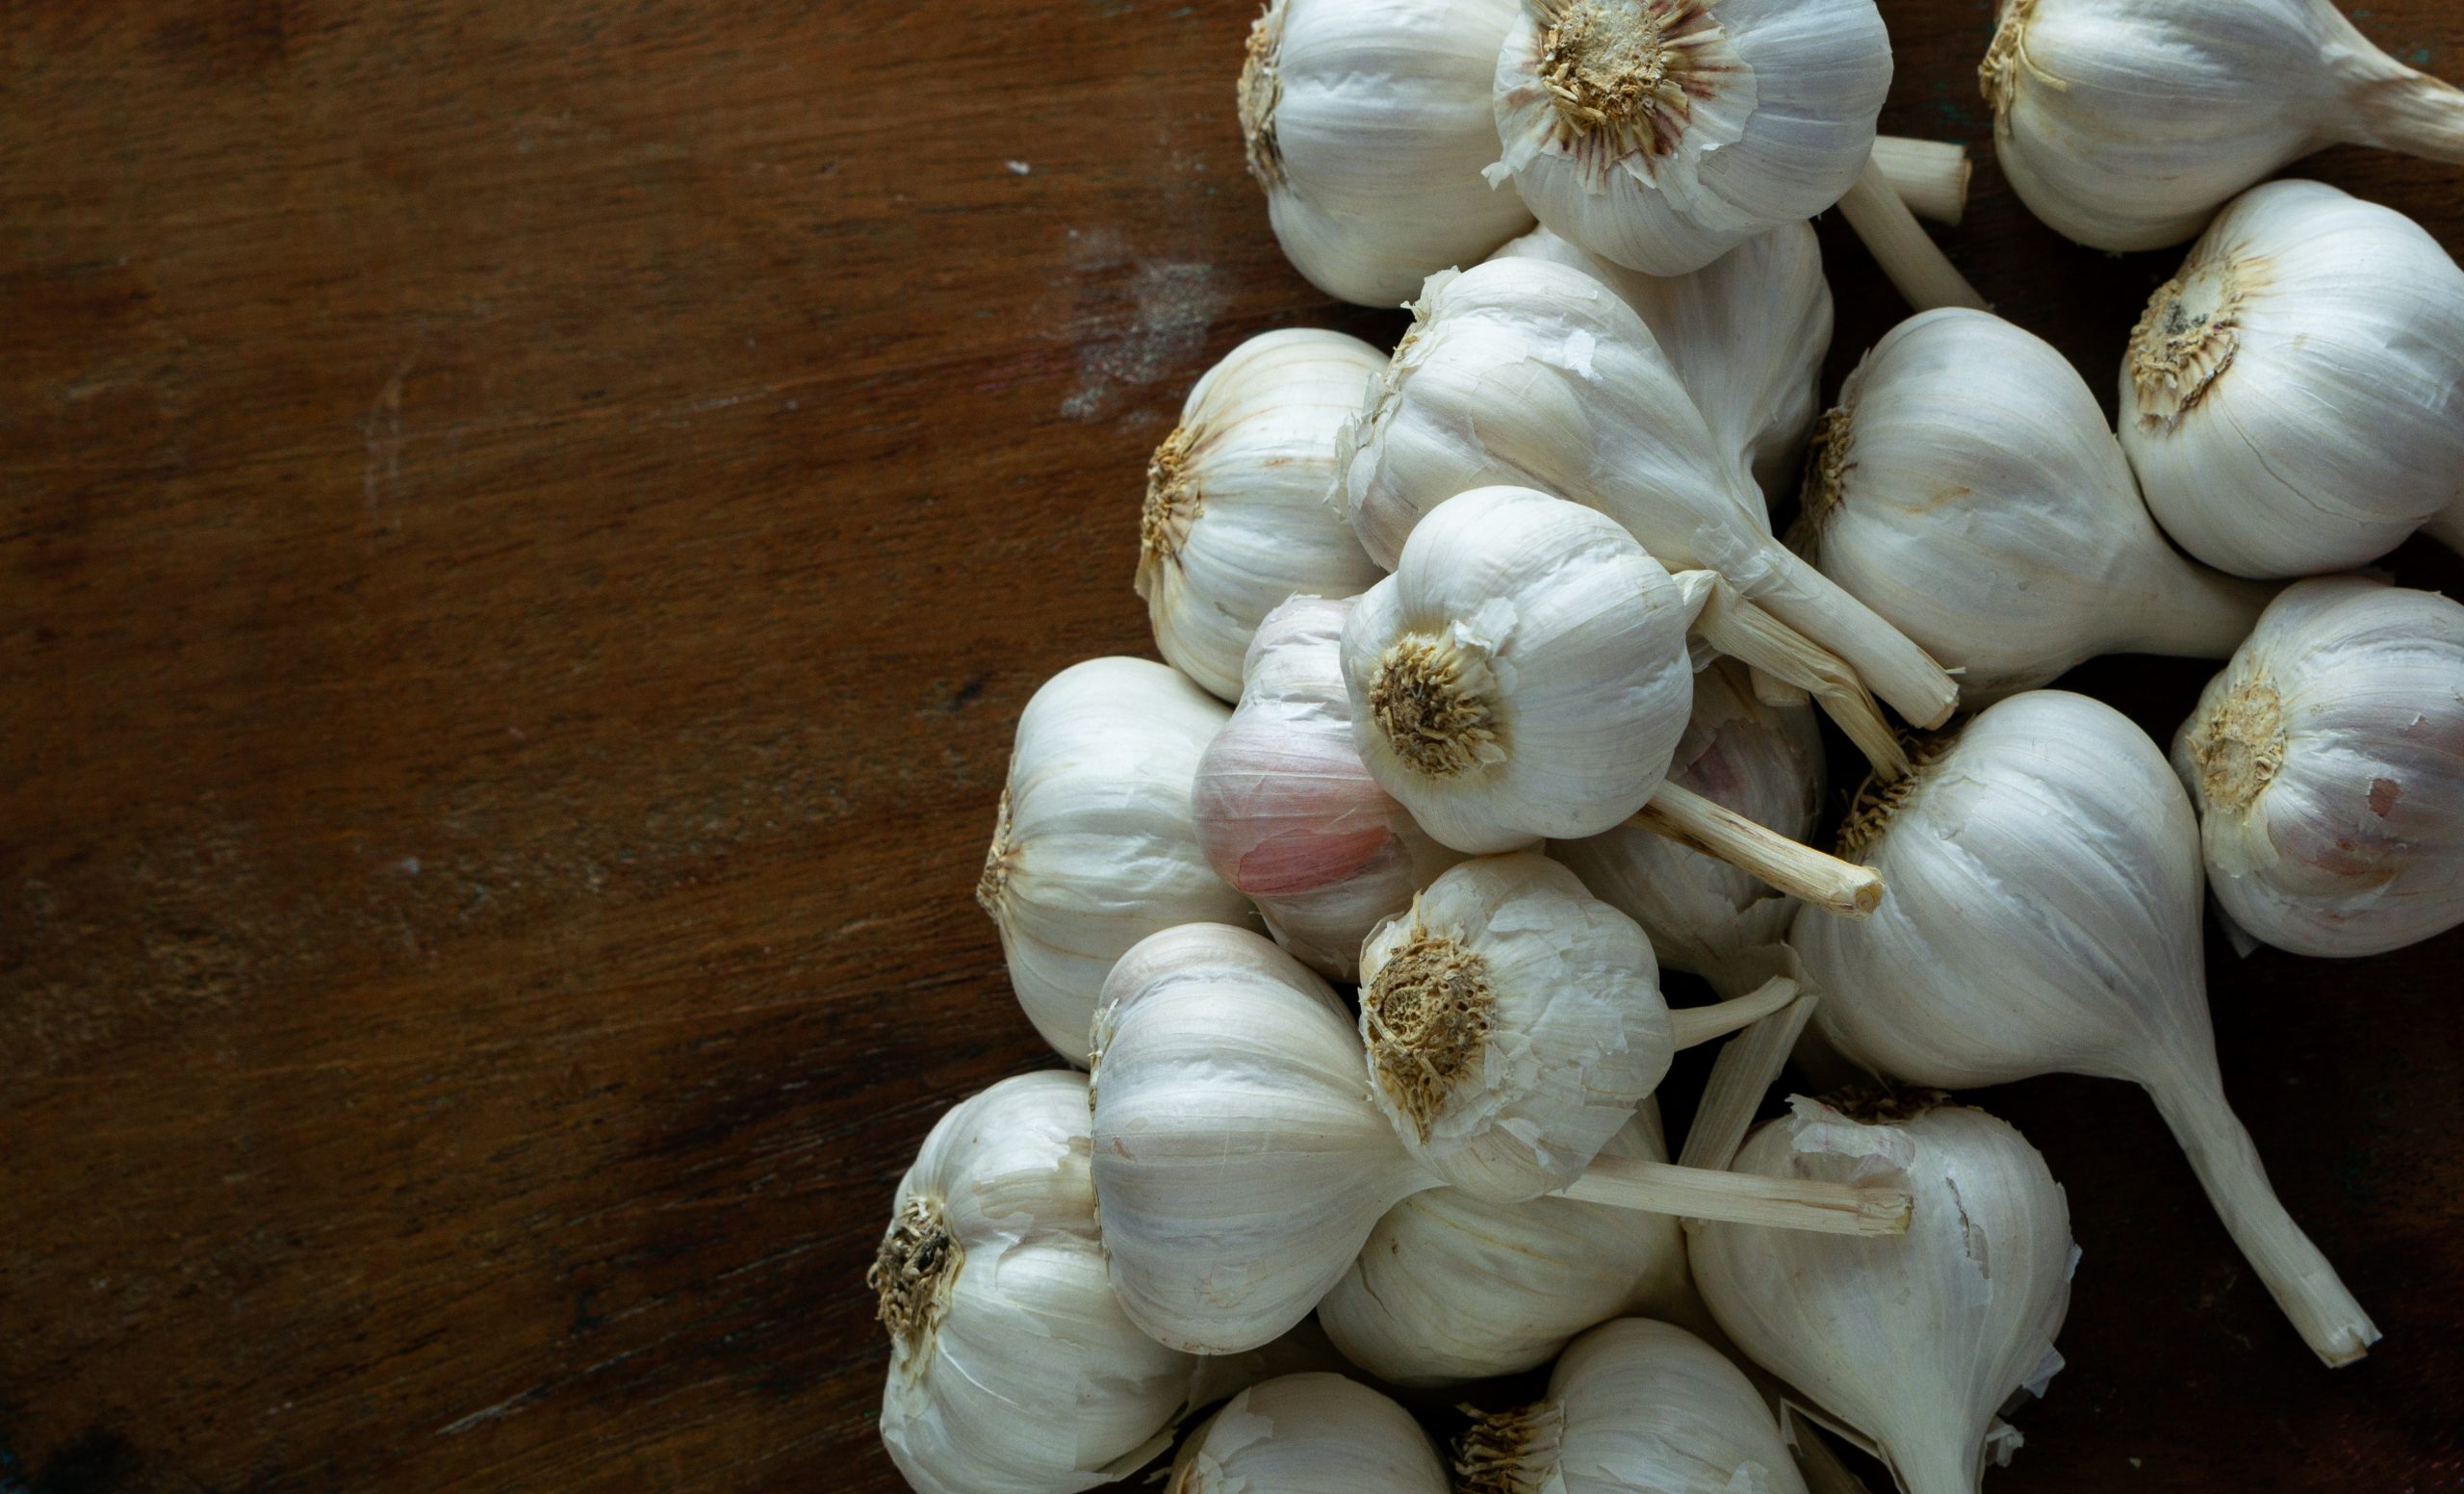 Raw garlic bulbs